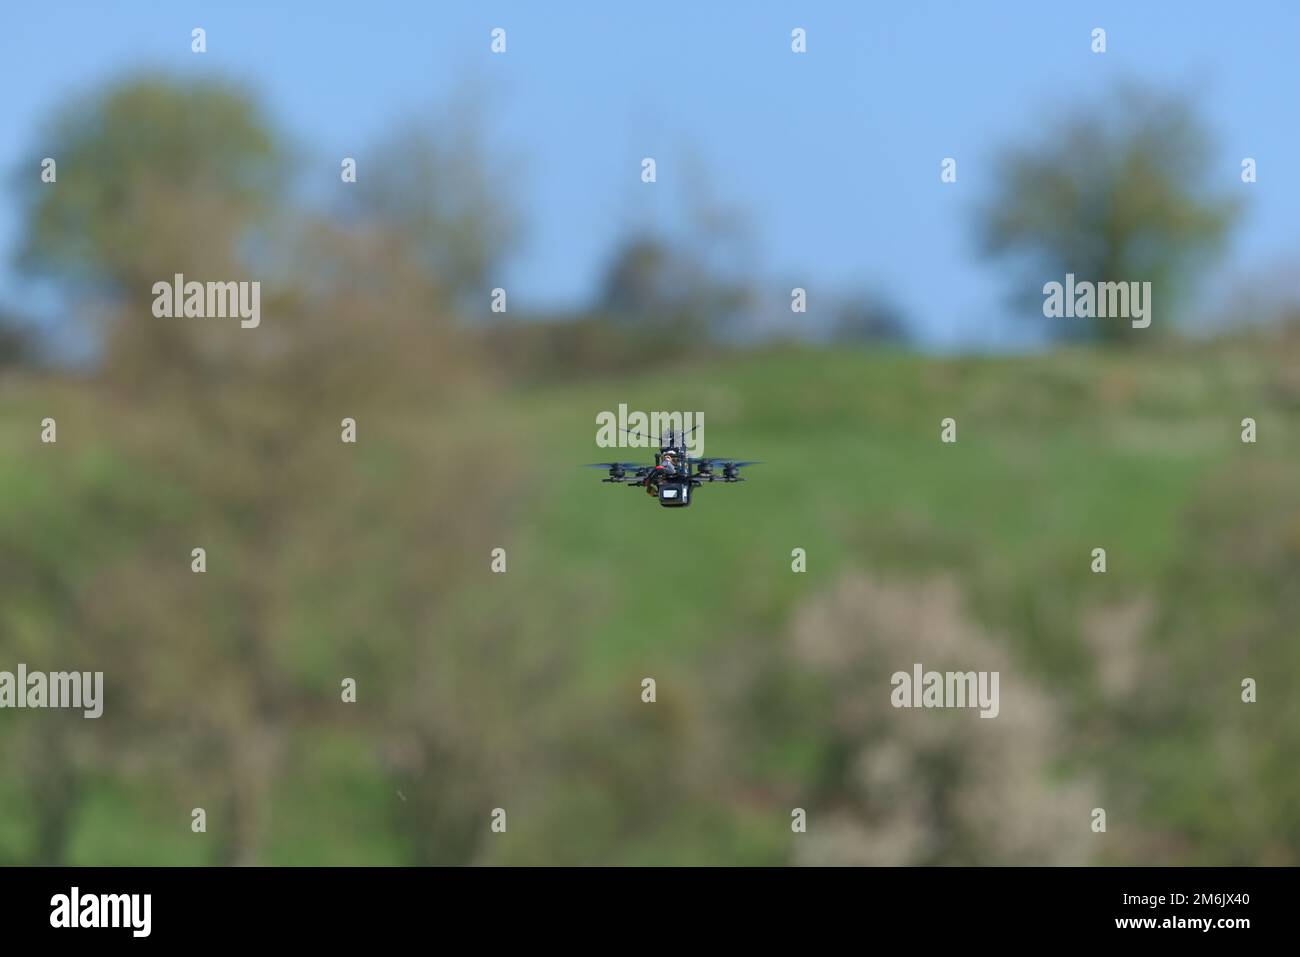 Eine sehr kleine und winzige Zahnstocher-Drohne fliegt von der Kamera weg, in einer ländlichen Umgebung, zu einem von Bäumen gesäumten Horizont und blauem Himmel. Stockfoto